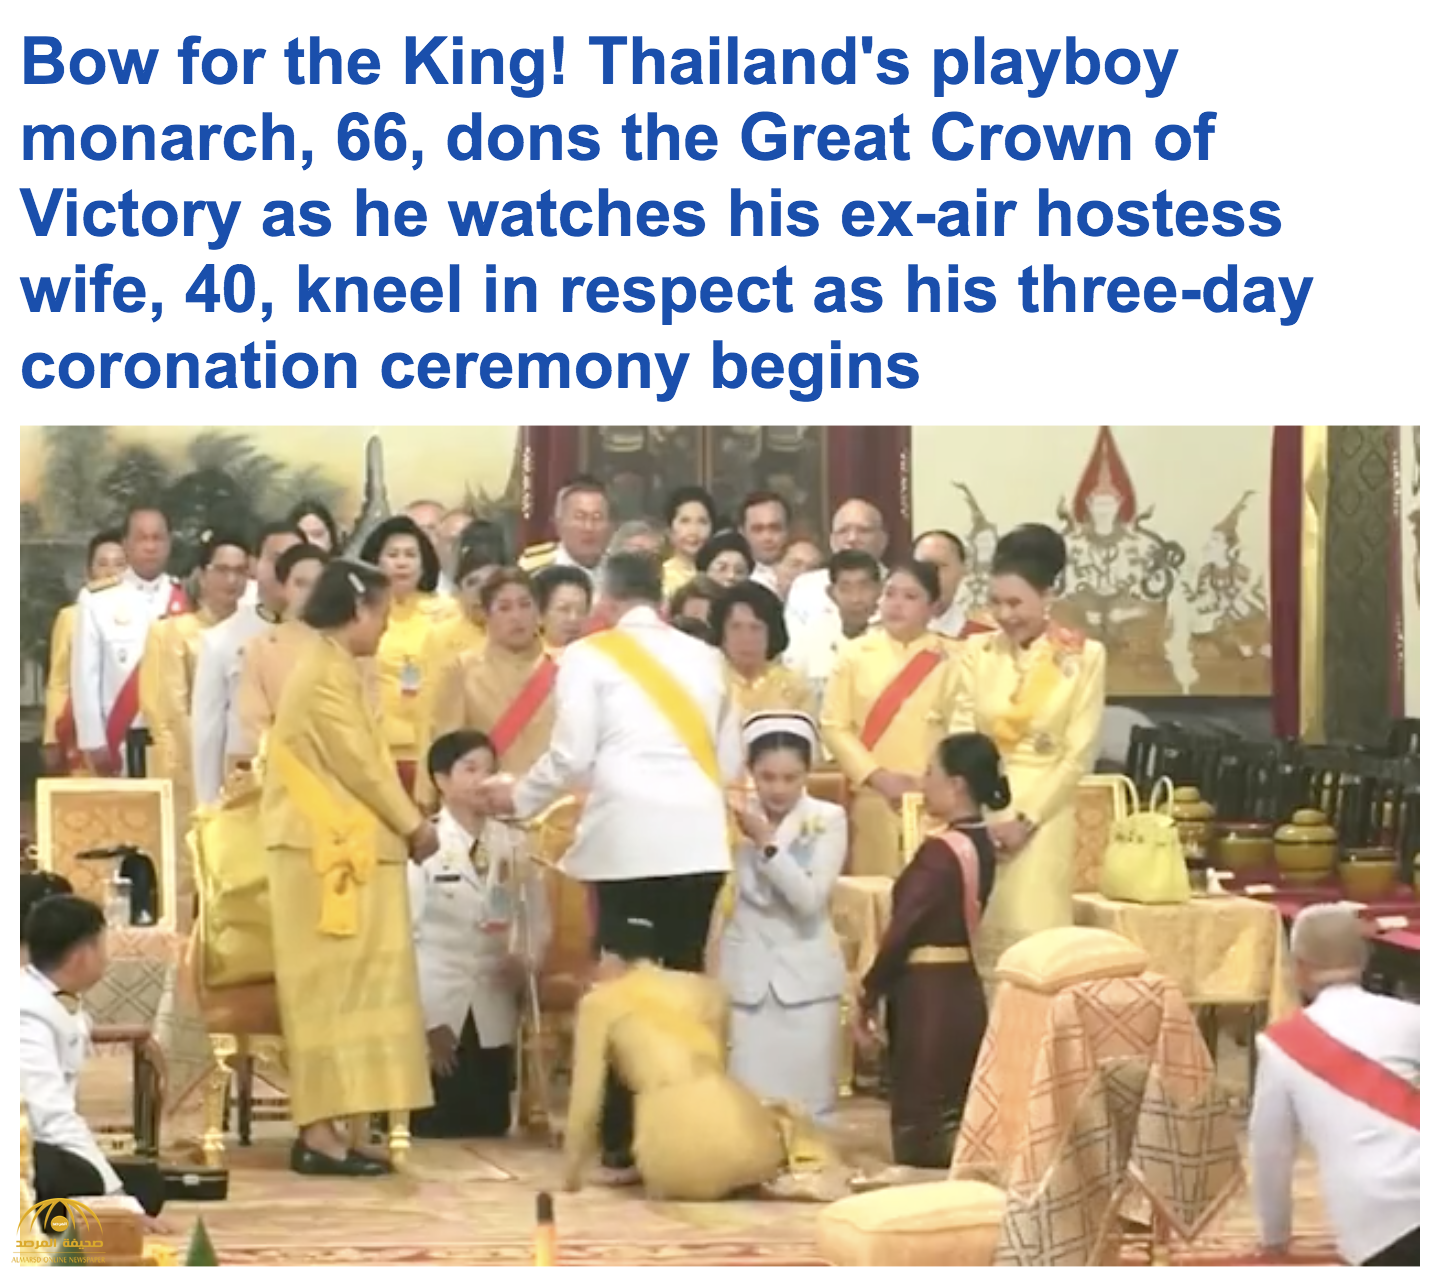 بالصور: تتويج الملك ماها فاجيرالونغكورن رسميا في تايلاند